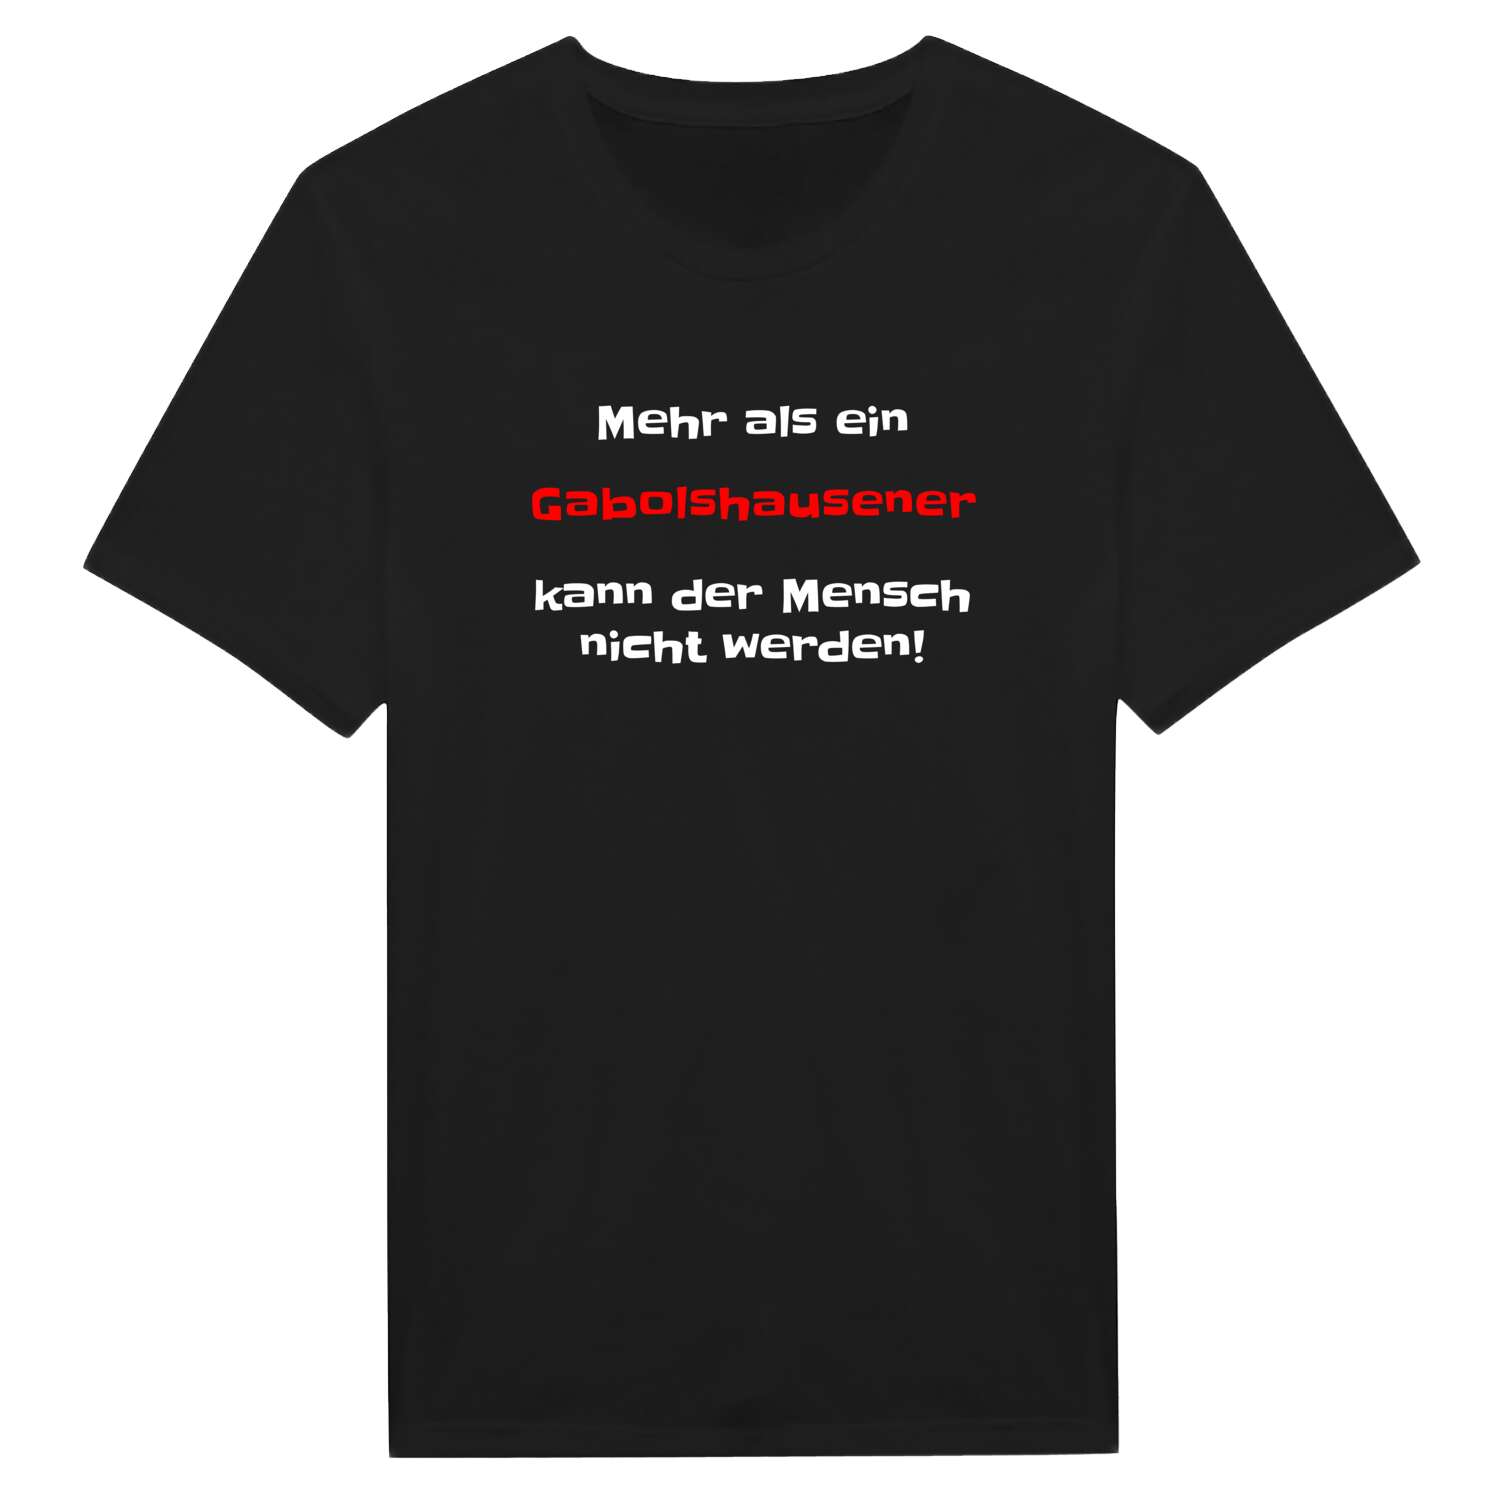 Gabolshausen T-Shirt »Mehr als ein«